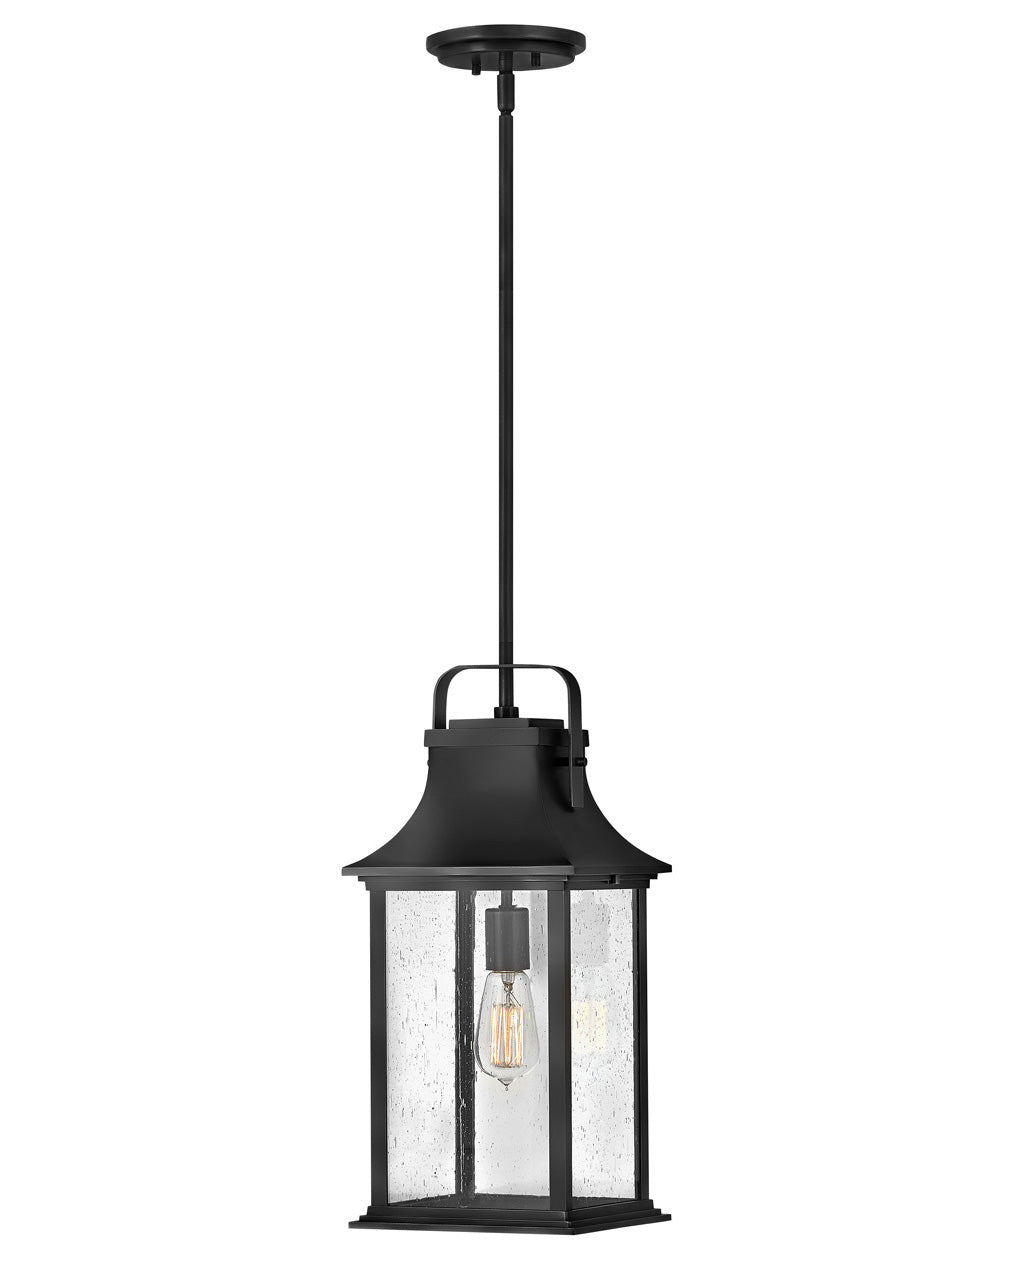 OUTDOOR GRANT Hanging Lantern Outdoor Light Fixture l Hanging Hinkley Textured Black 8.5x8.5x19.75 